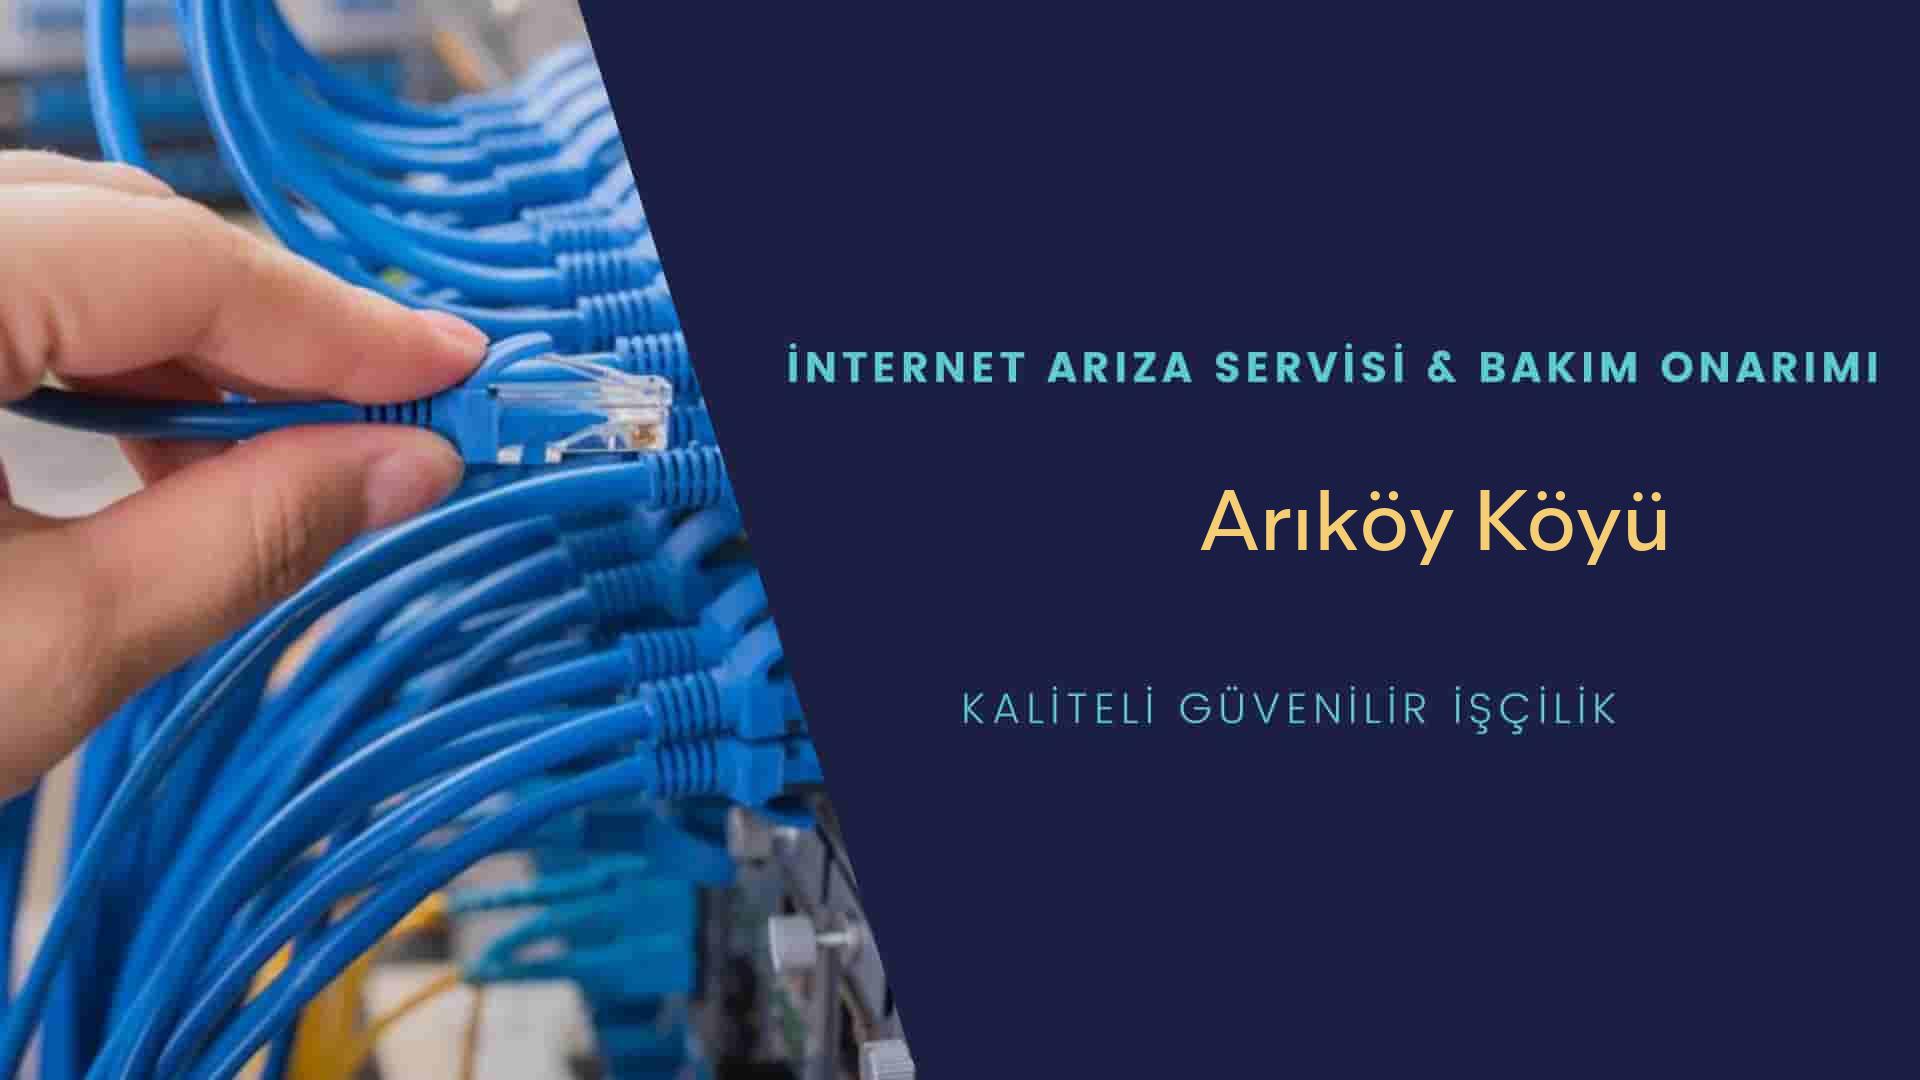 Arıköy Köyü internet kablosu çekimi yapan yerler veya elektrikçiler mi? arıyorsunuz doğru yerdesiniz o zaman sizlere 7/24 yardımcı olacak profesyonel ustalarımız bir telefon kadar yakındır size.